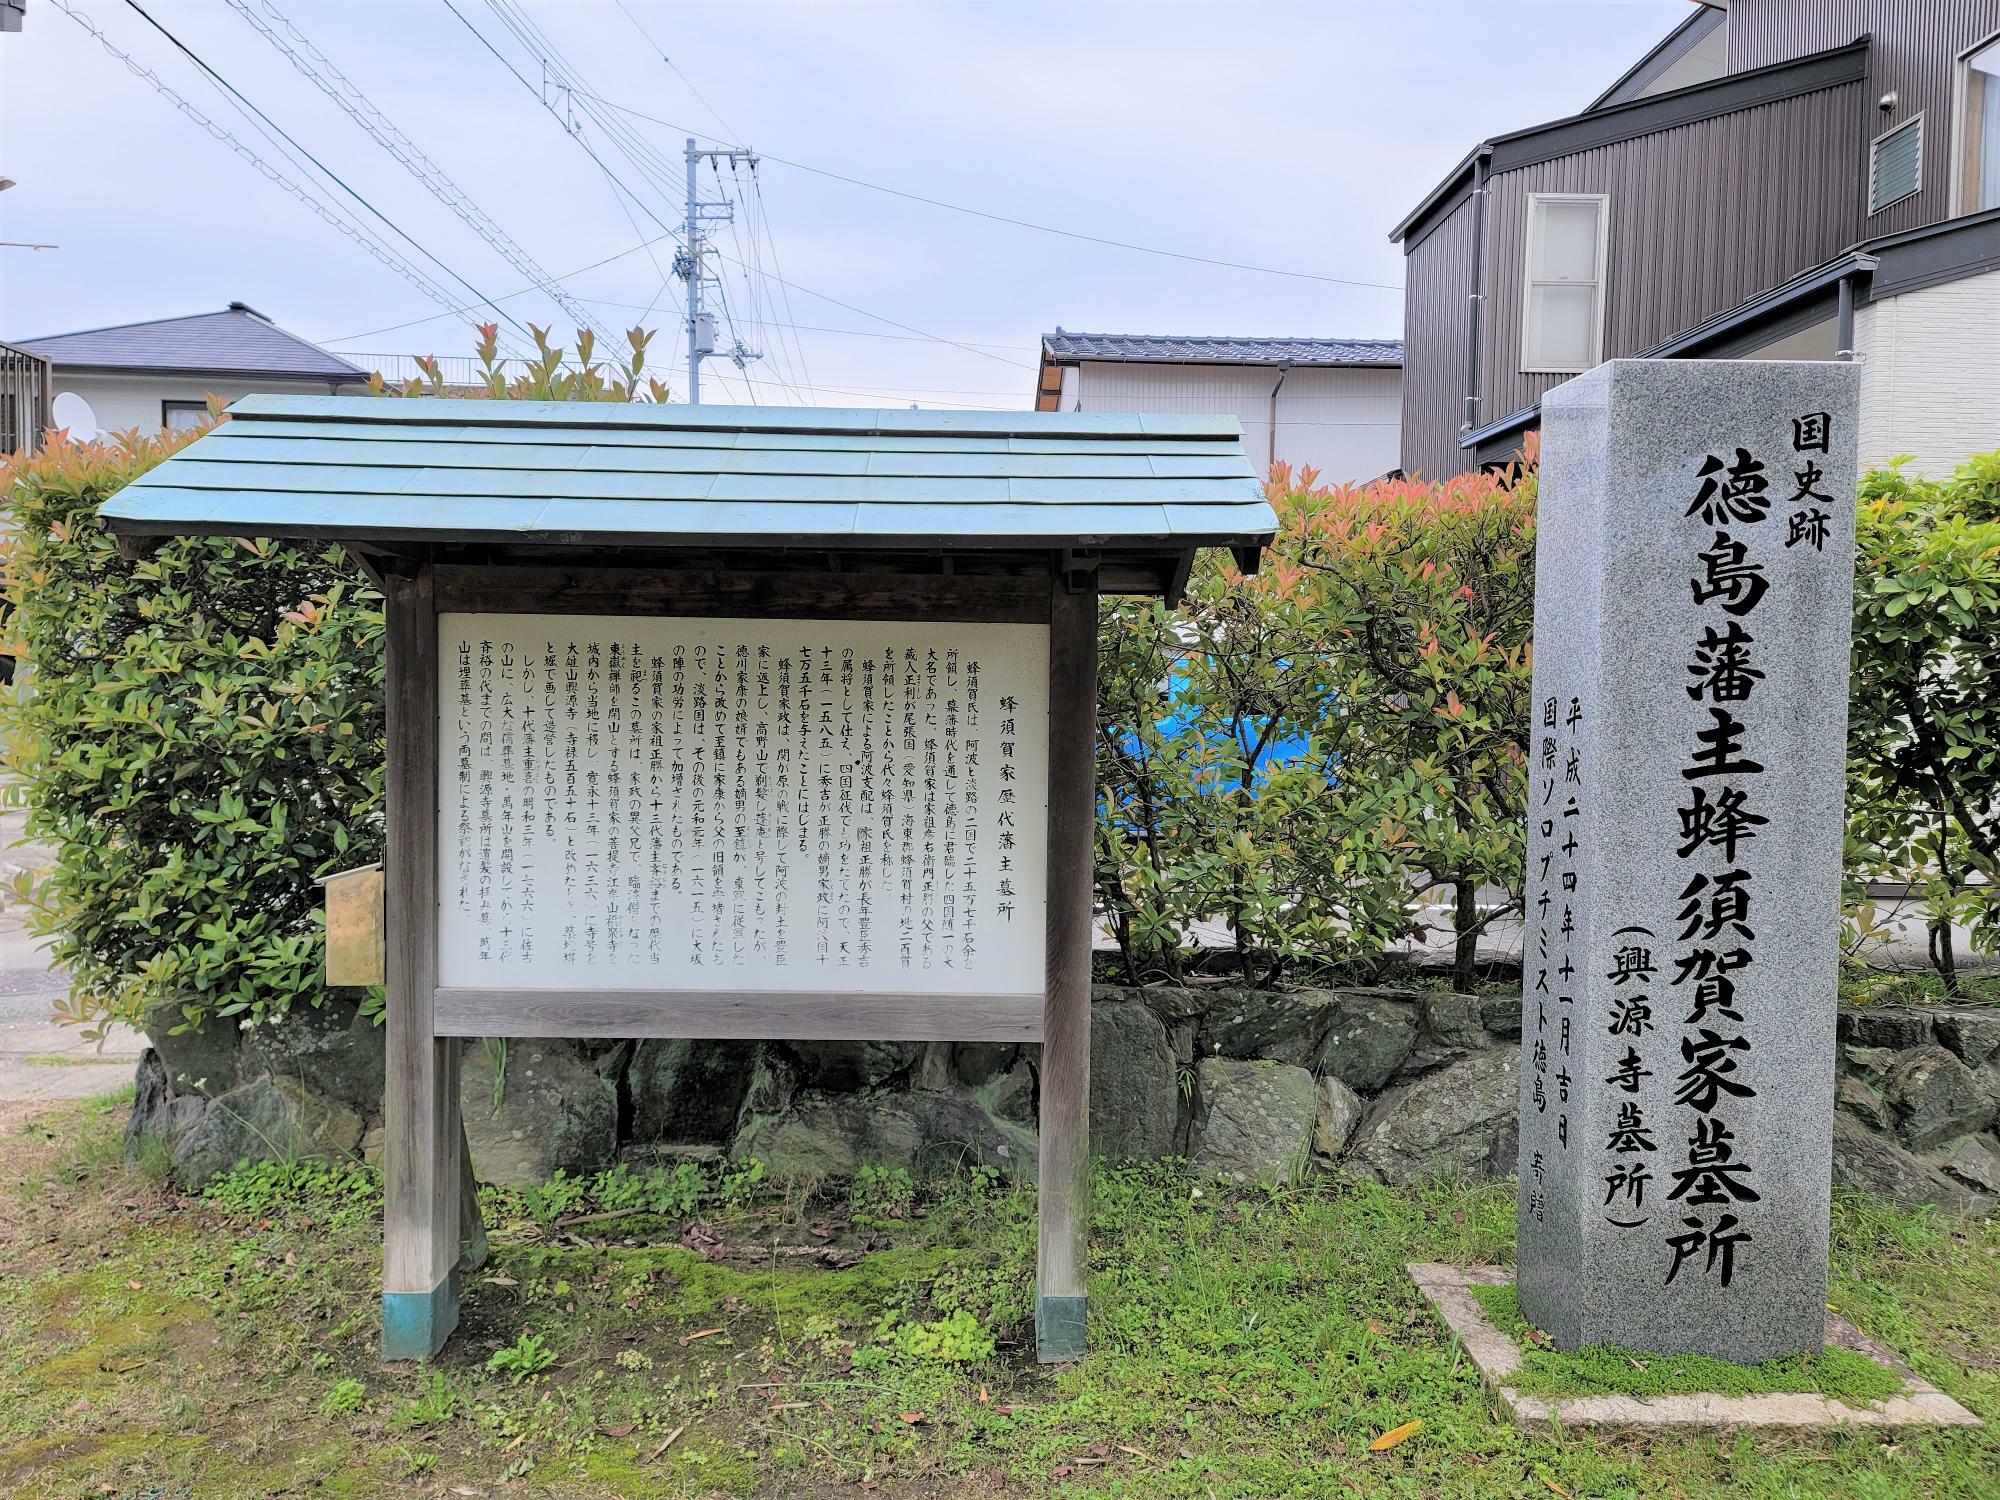 興源寺にある「蜂須賀家歴代藩主墓所」についての石碑や説明看板。※写真は過去のものです。